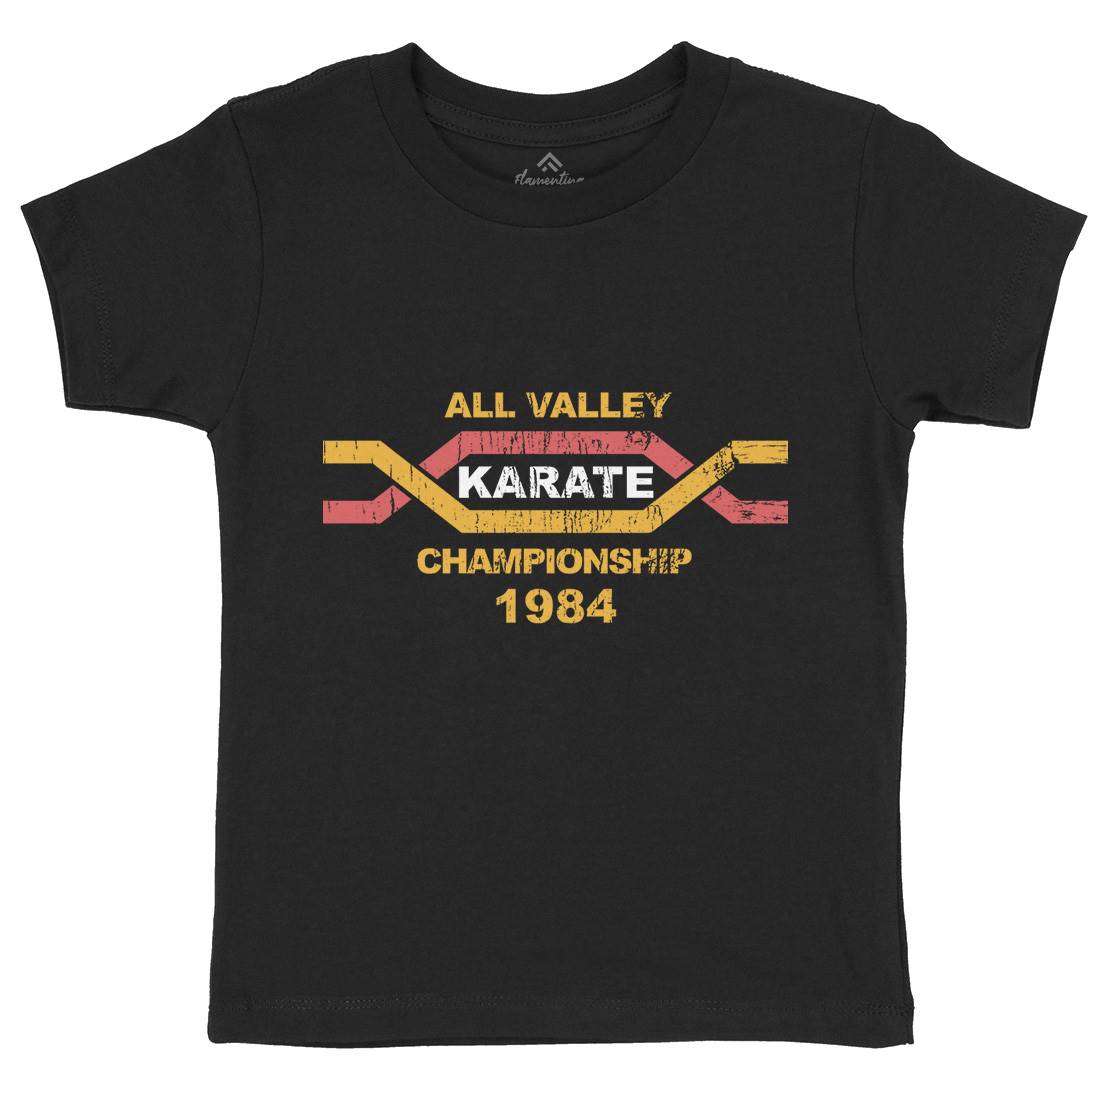 All Valley Kids Crew Neck T-Shirt Sport D251